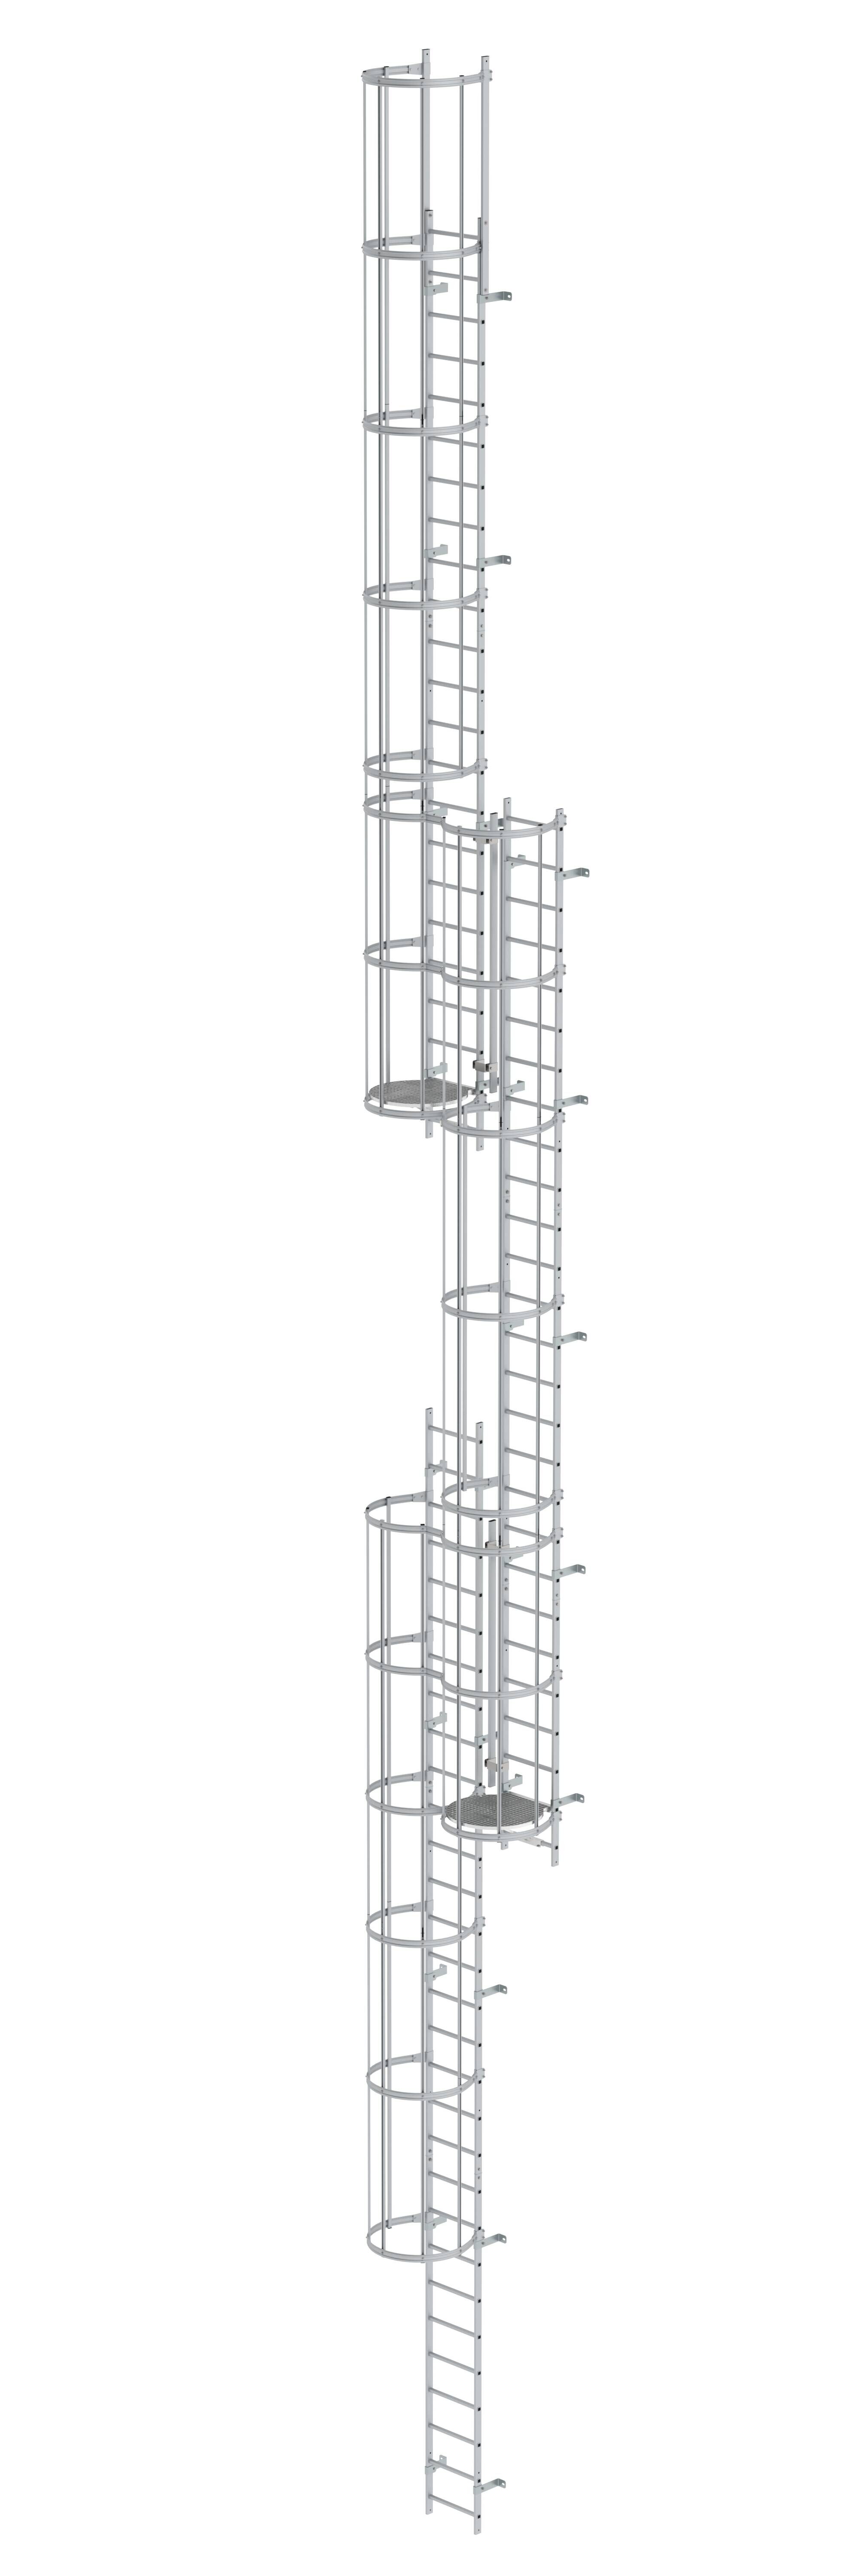 Mehrzügige Steigleiter mit Rückenschutz (Maschinen) Aluminium eloxiert 18,00m